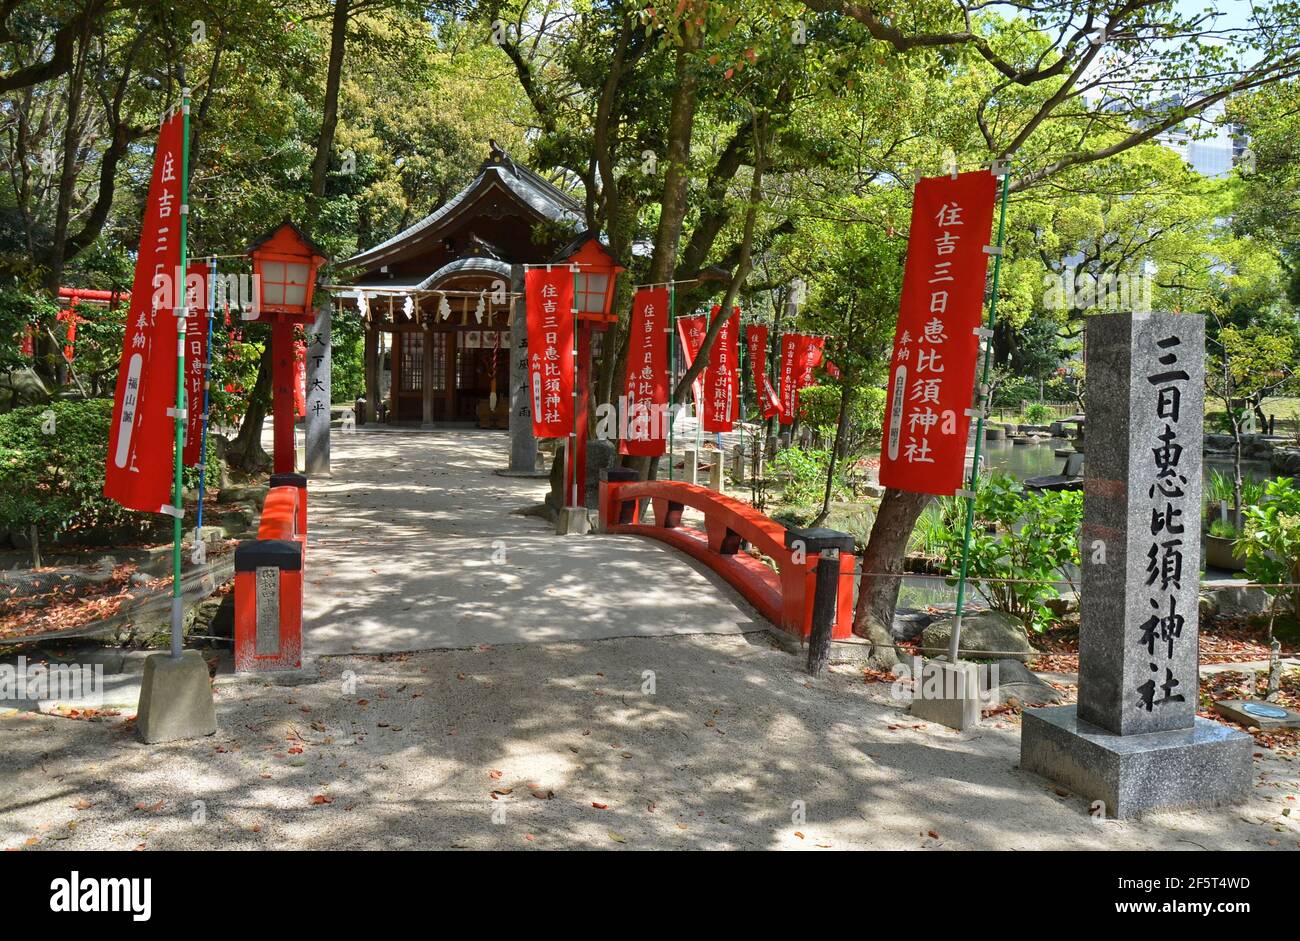 Santuario di Sumiyoshi nella città di Fukuoka, Giappone. Questo santuario è dedicato a viaggi sicuri via mare ed è presumibilmente il più antico santuario shintoista di Kyushu. Foto Stock